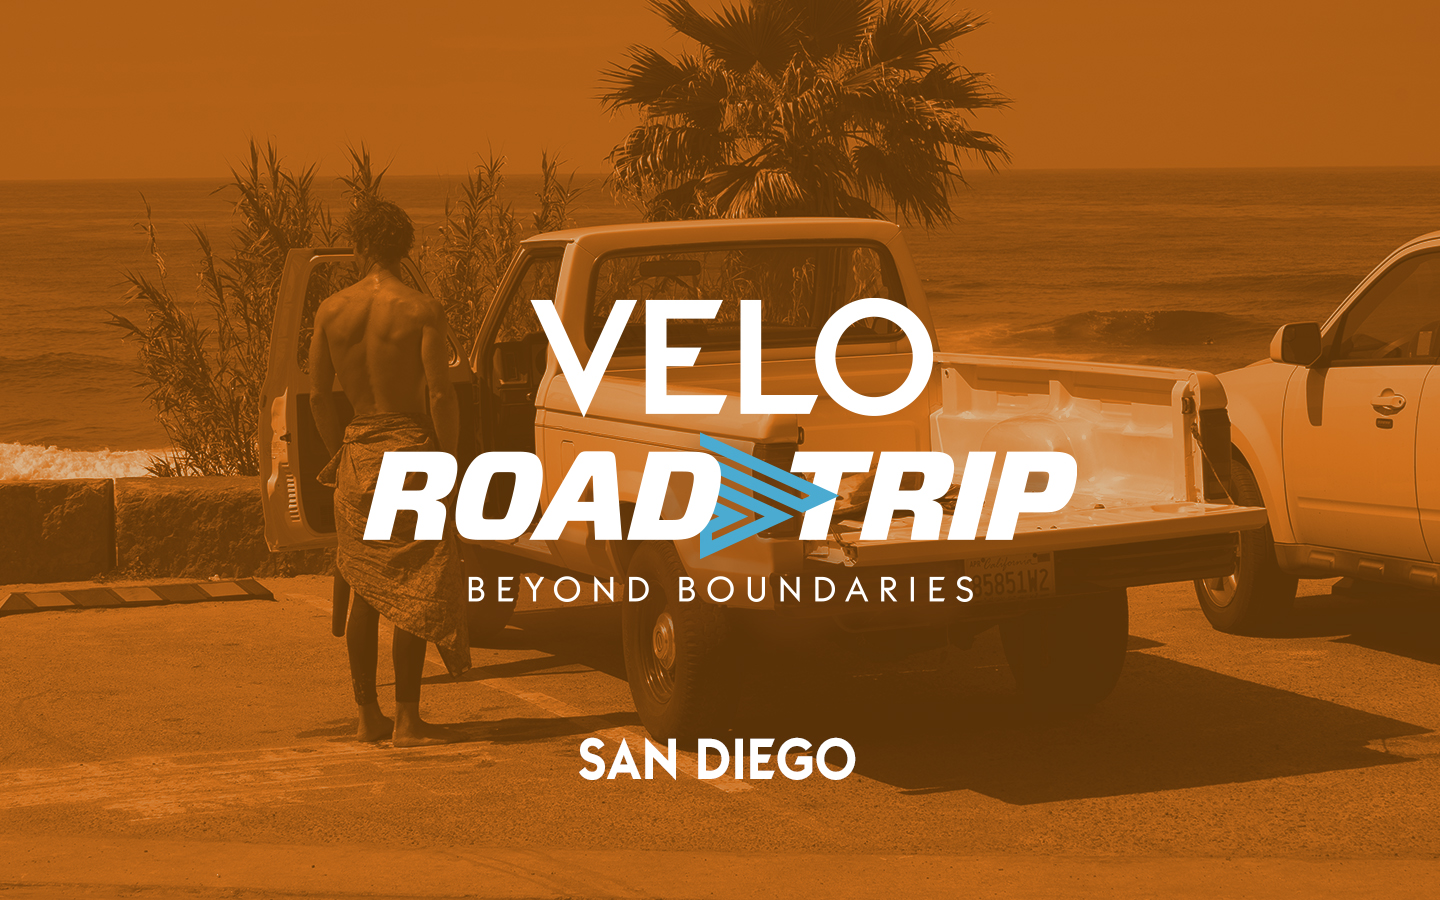 VELO Road Trip Beyond Boundaries - San Diego